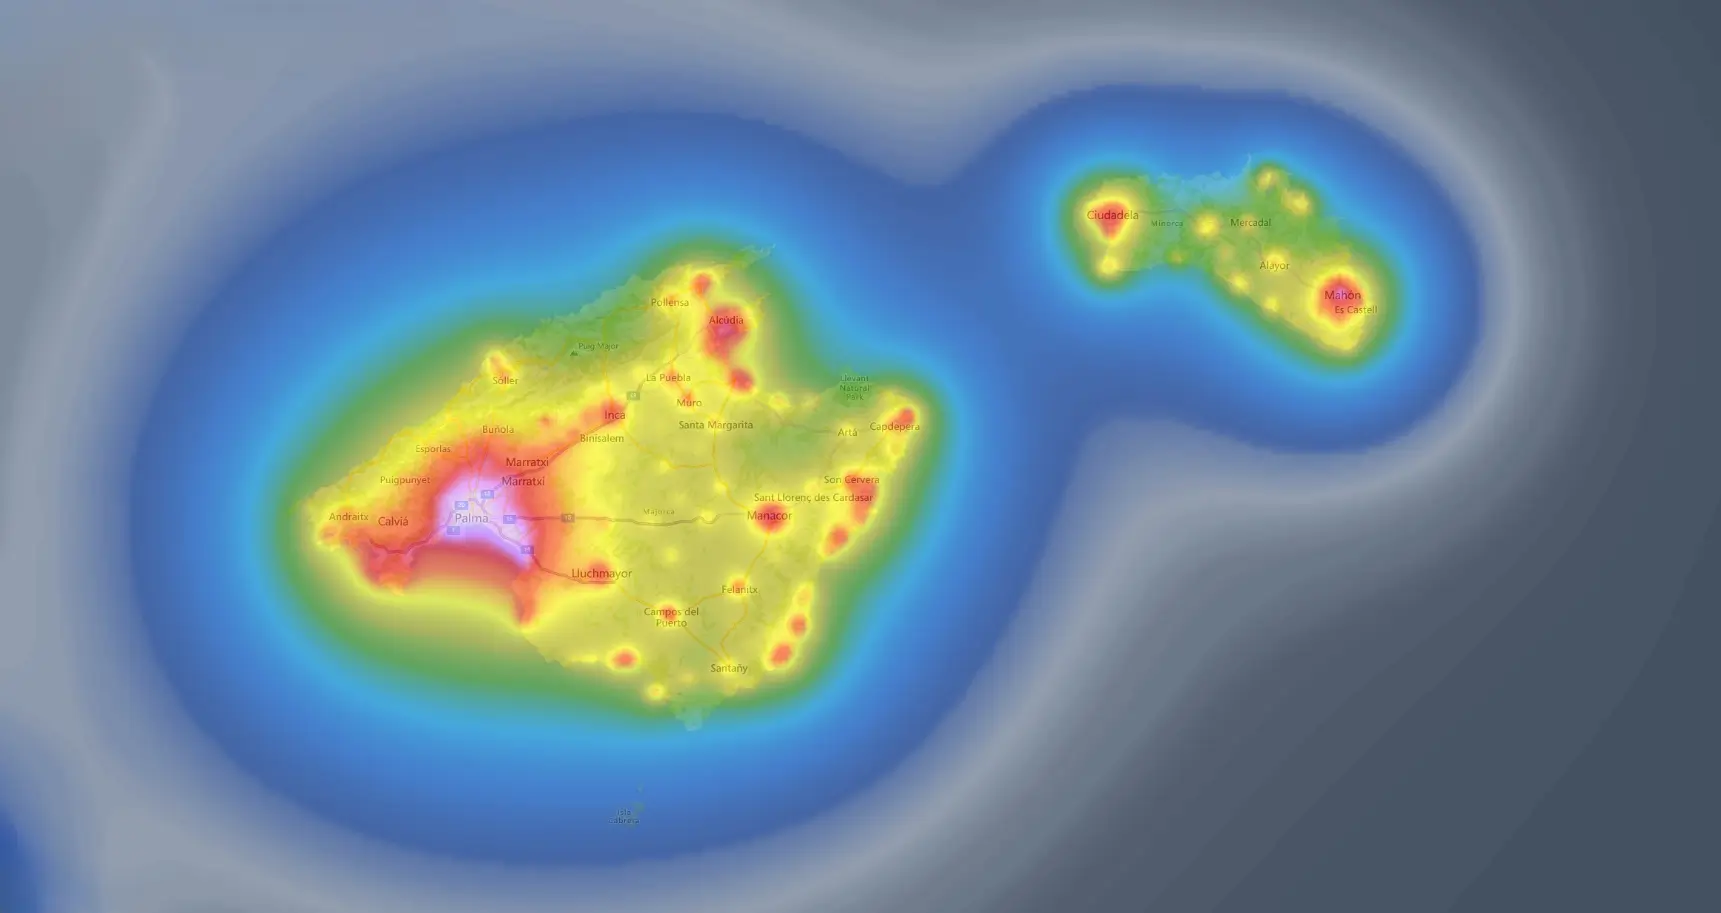 El mapa lumínico de Baleares muestra los lugares con mayor contaminación lumínica de las islas.